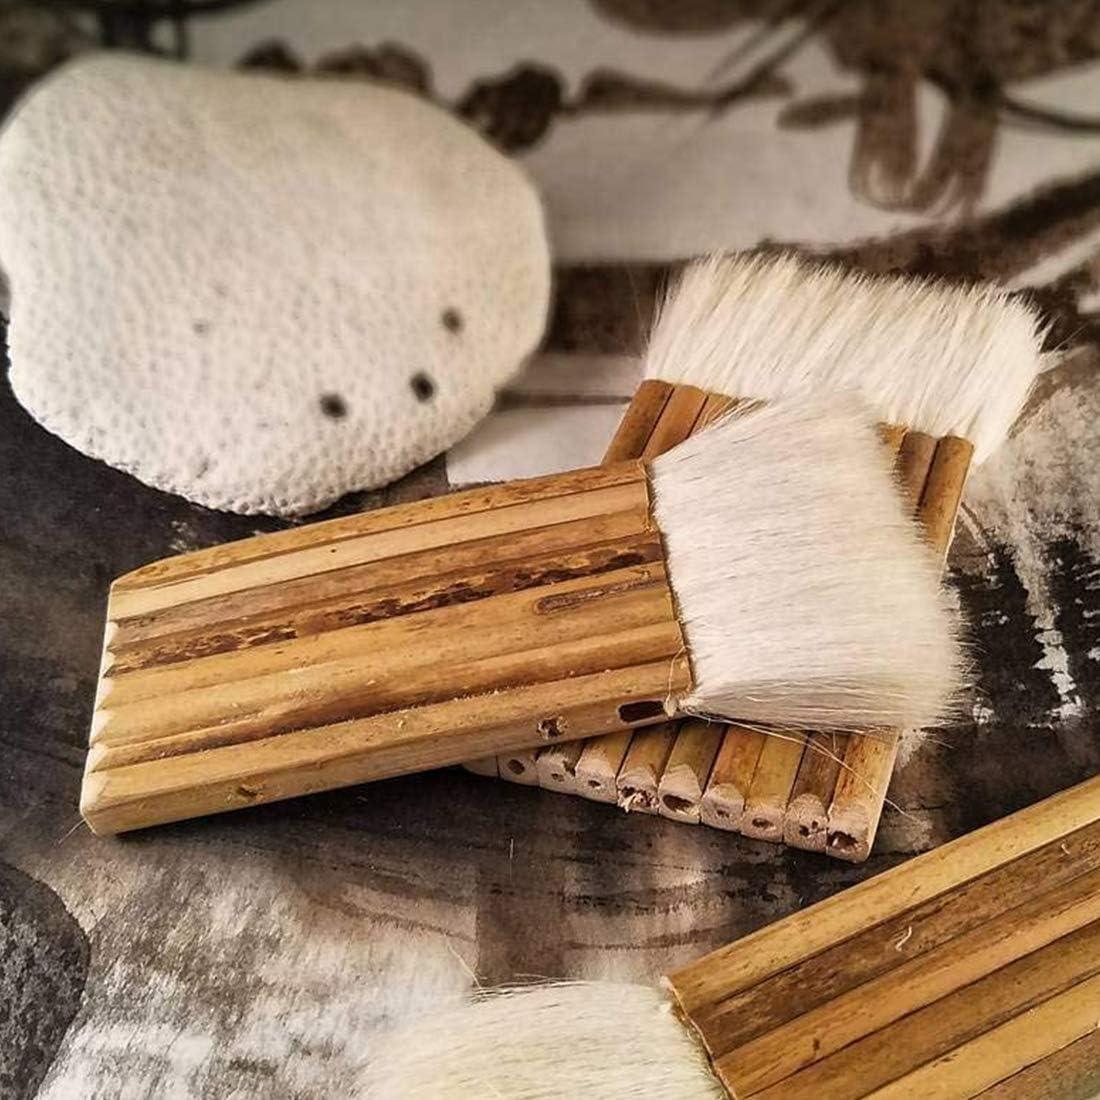 Bamboo Hake Brushes